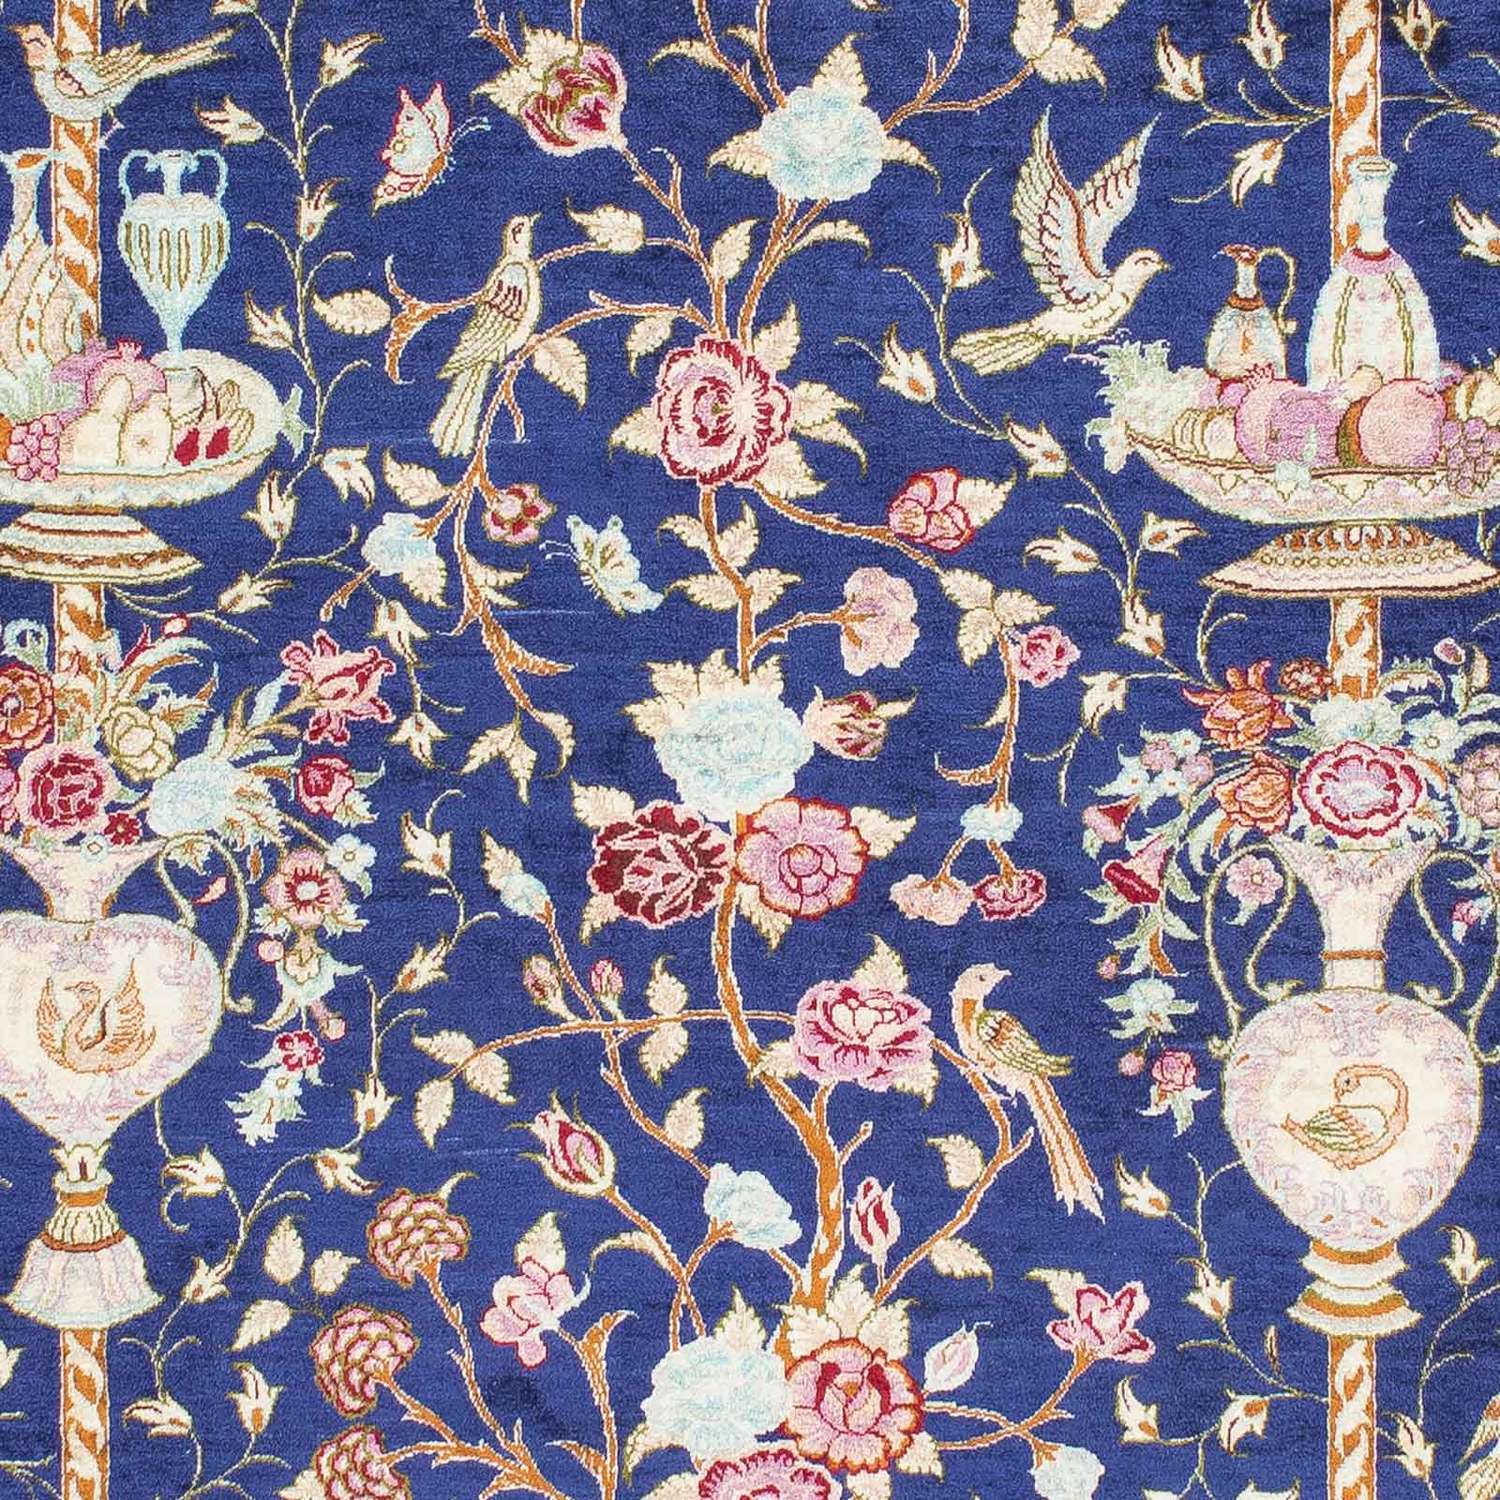 Persisk tæppe - Ghom - 147 x 100 cm - mørkeblå